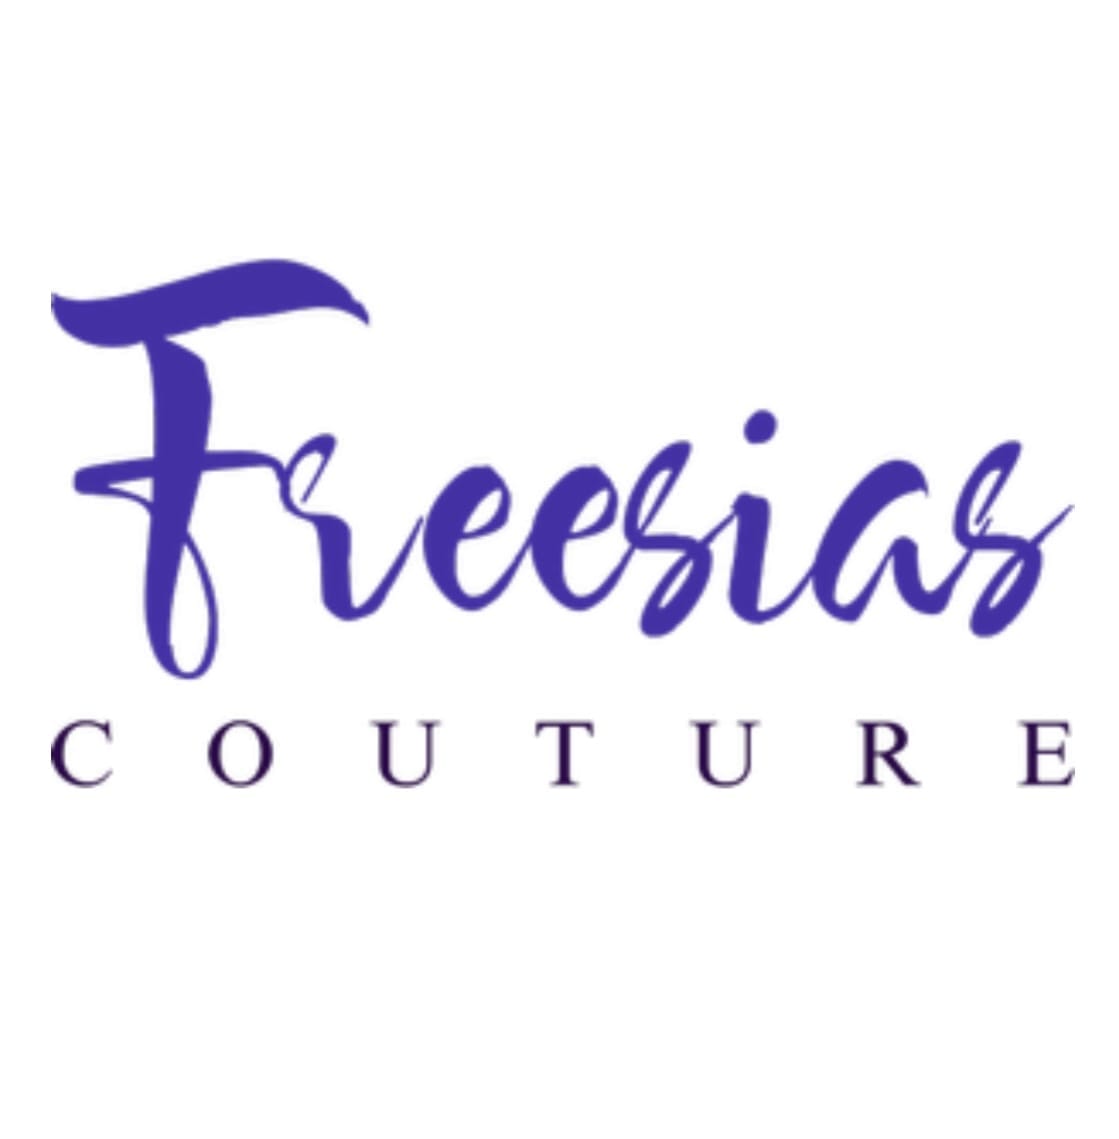 Freesias Couture